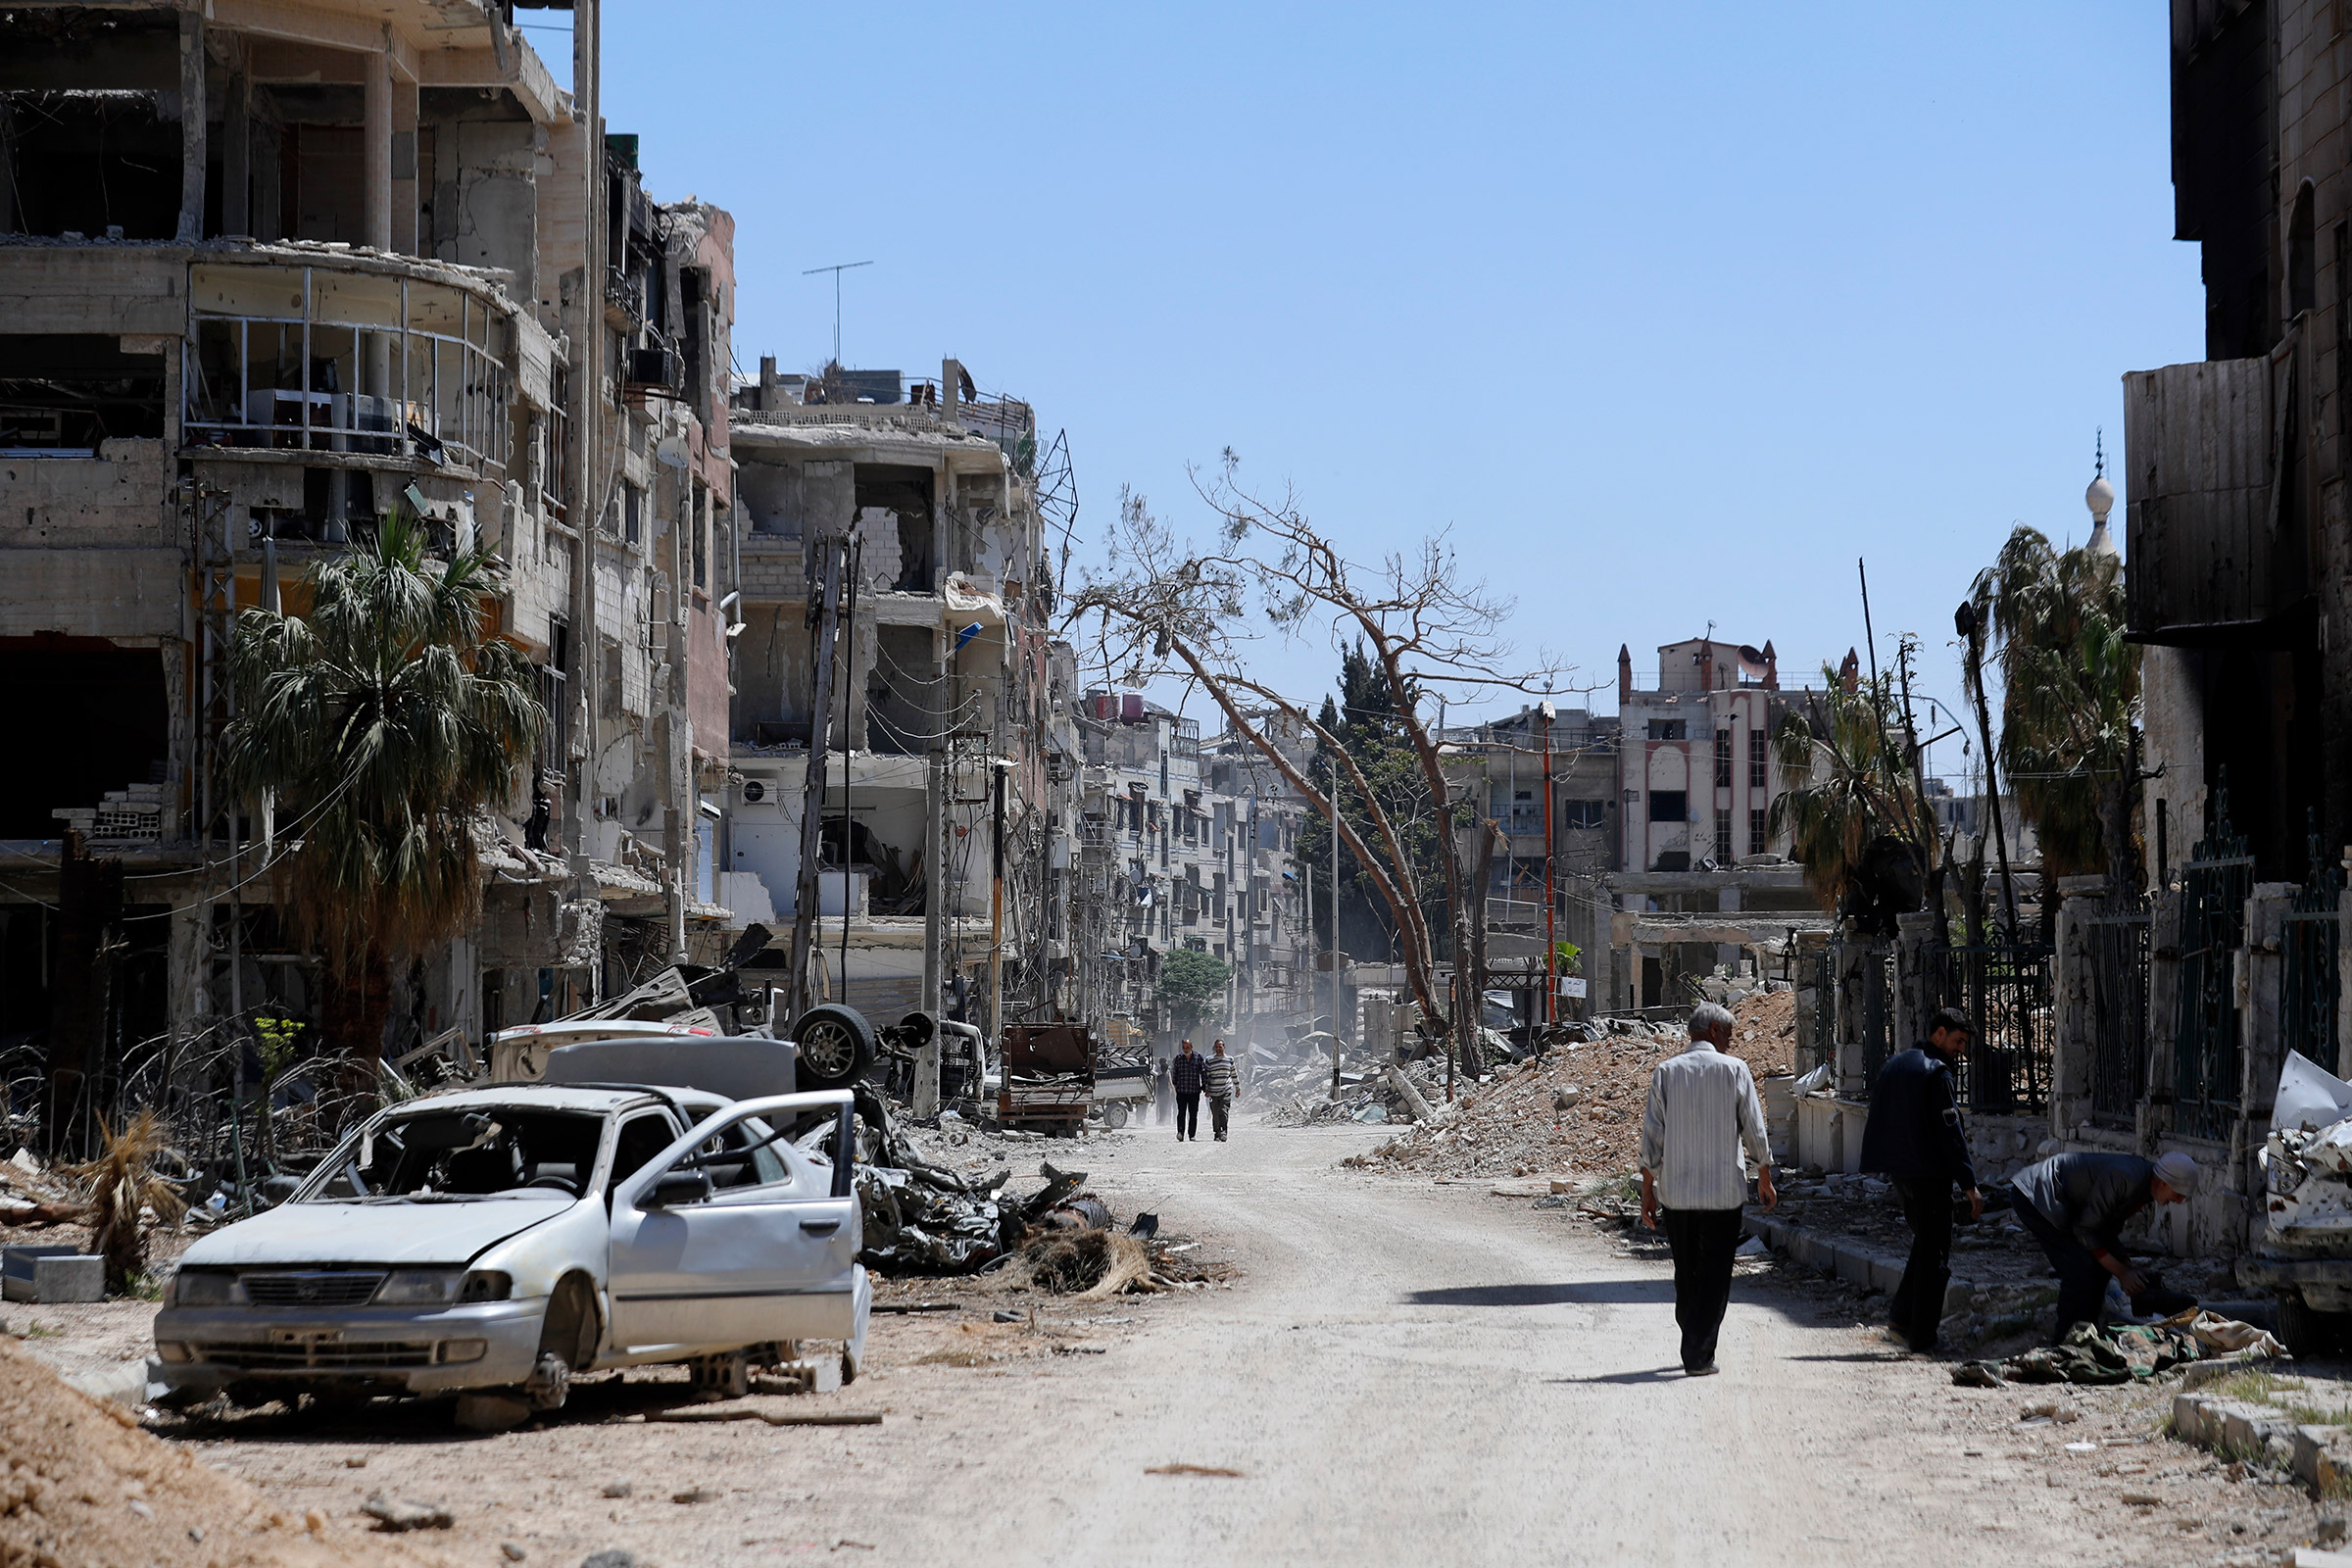 Информация о возможной химической атаке в регионе появилась 7 апреля. ​По сообщению экспертов Сирийско-американского медицинского общества (SAMS), ВВС Сирии применили химическое оружие против повстанцев в северо-восточном пригороде Дамаска Думе, где в последние недели шли столкновения правительственных сил и вооруженной оппозиции.
